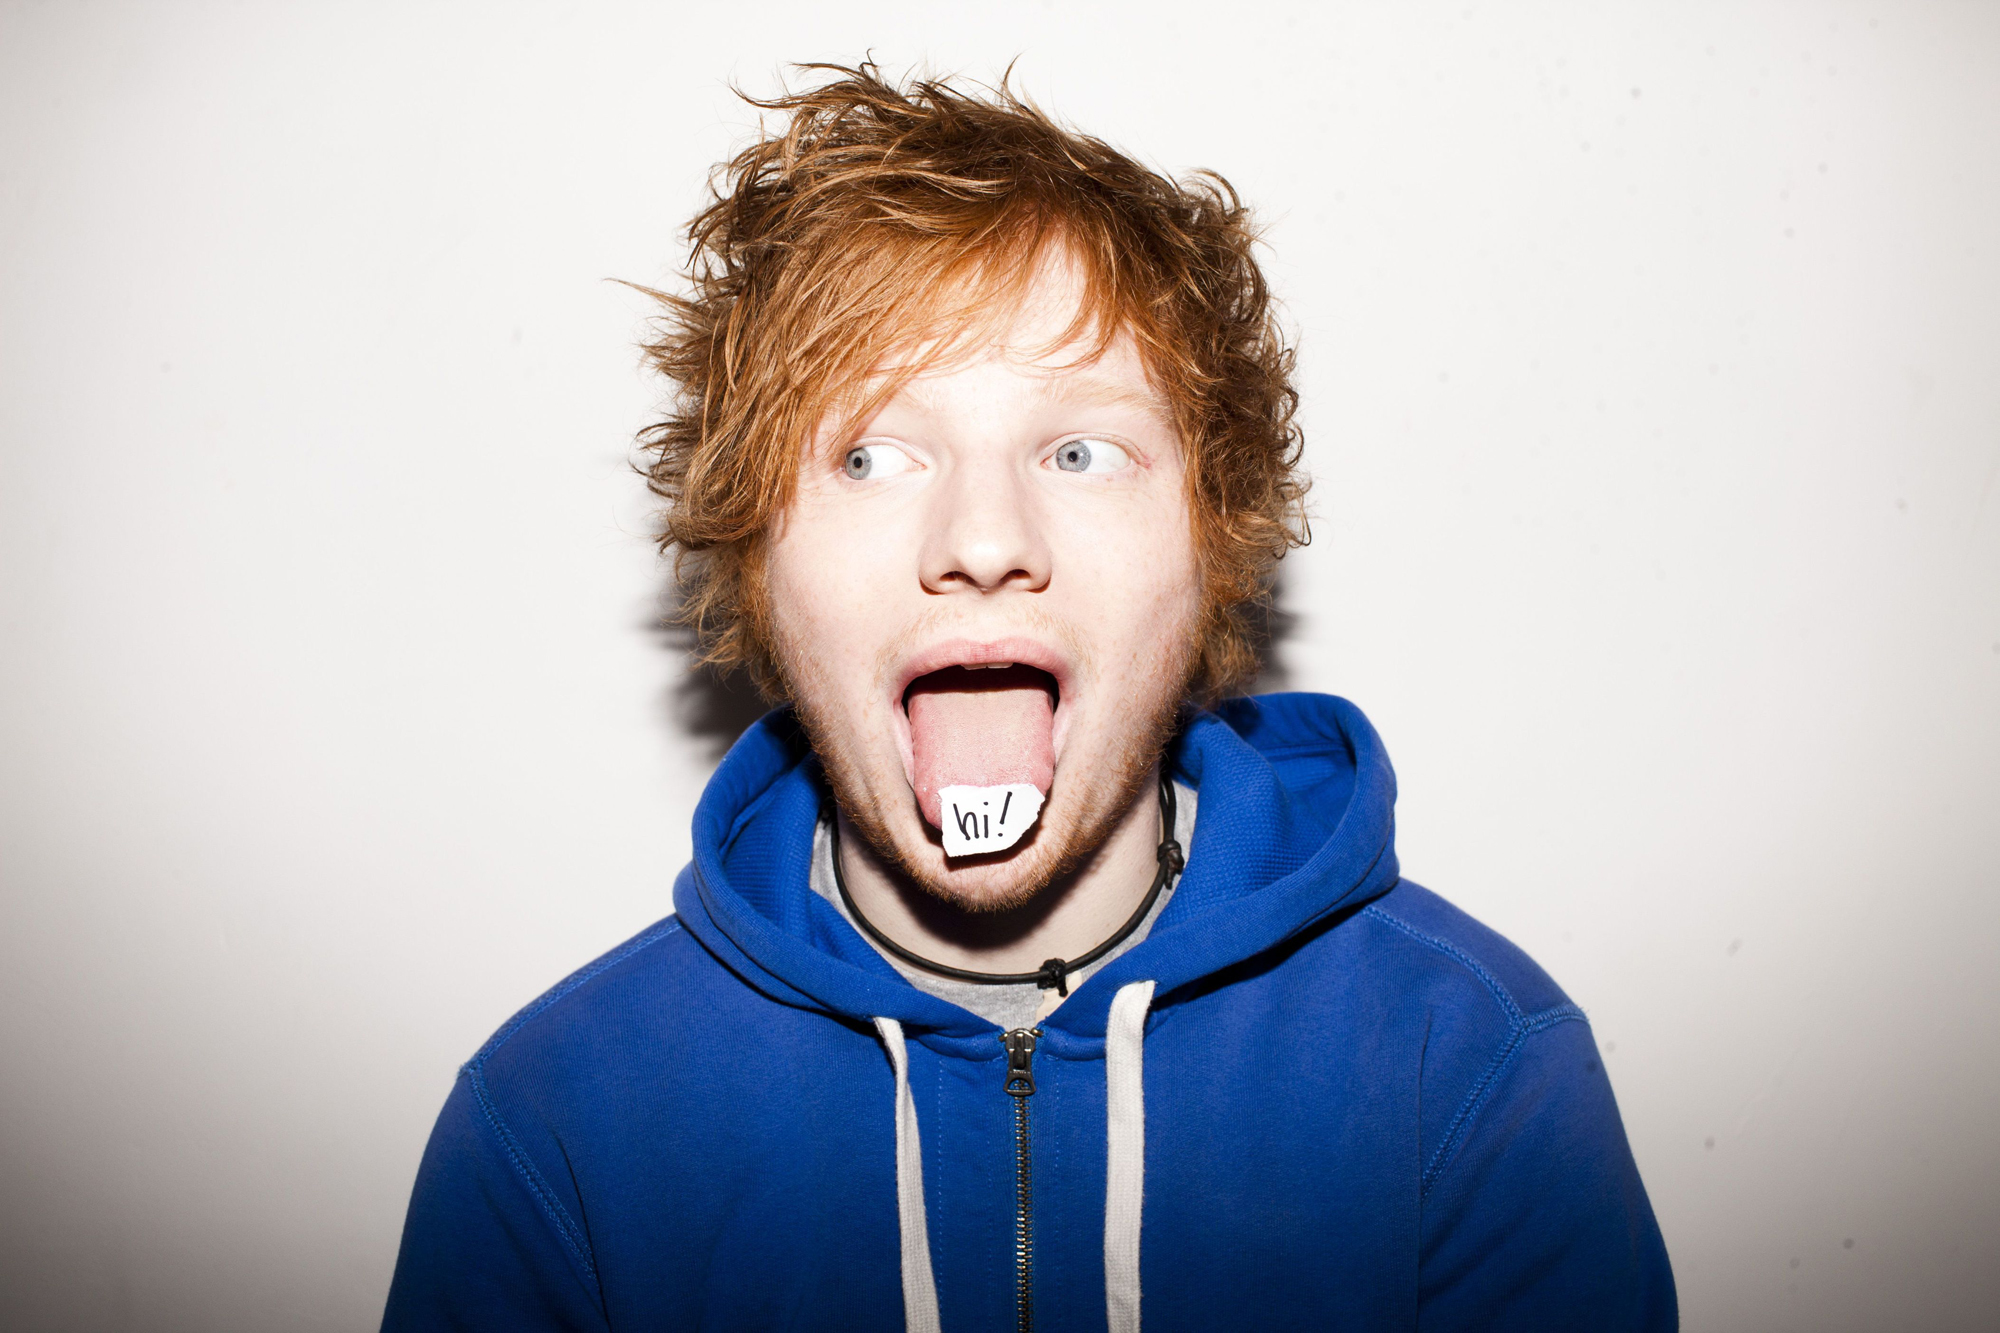 Melhores papéis de parede de Ed Sheeran para tela do telefone